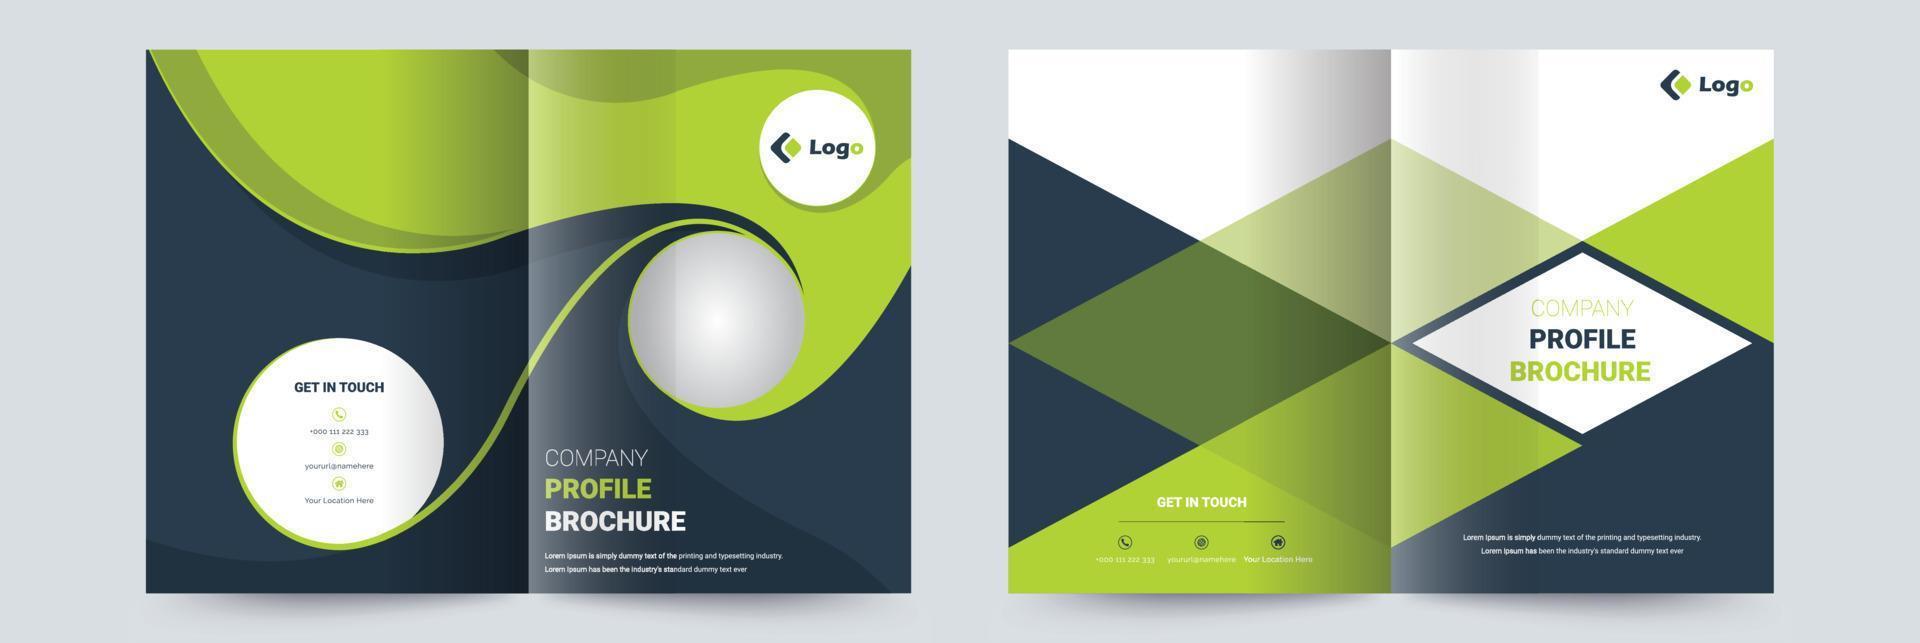 Firmenprofil-Broschüren-Cover-Design-Vorlage, die für Mehrzweckprojekte geeignet ist vektor